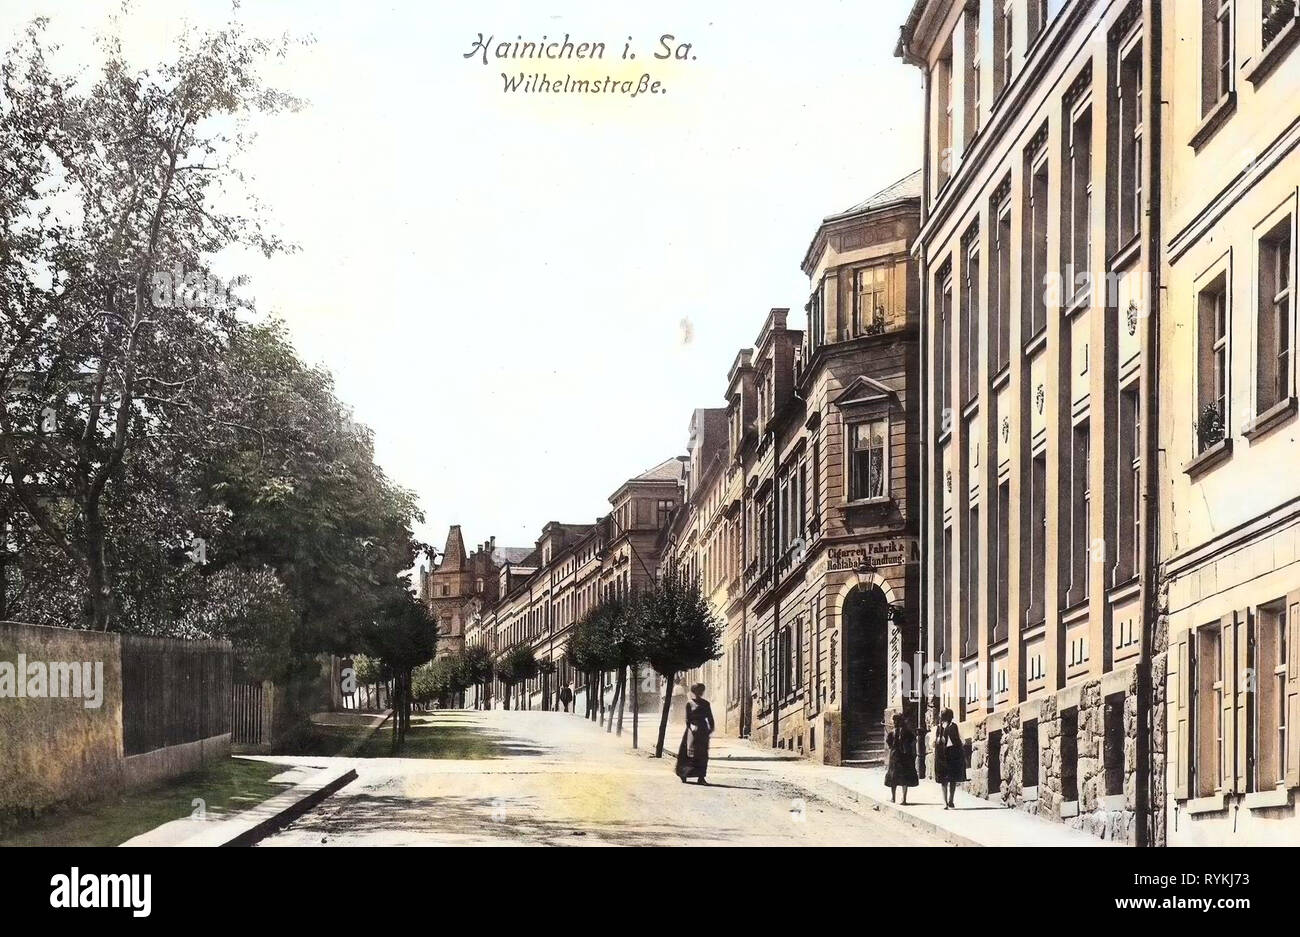 Buildings in Hainichen, 1915, Landkreis Mittelsachsen, Hainichen, Wilhelmstraße, Germany Stock Photo